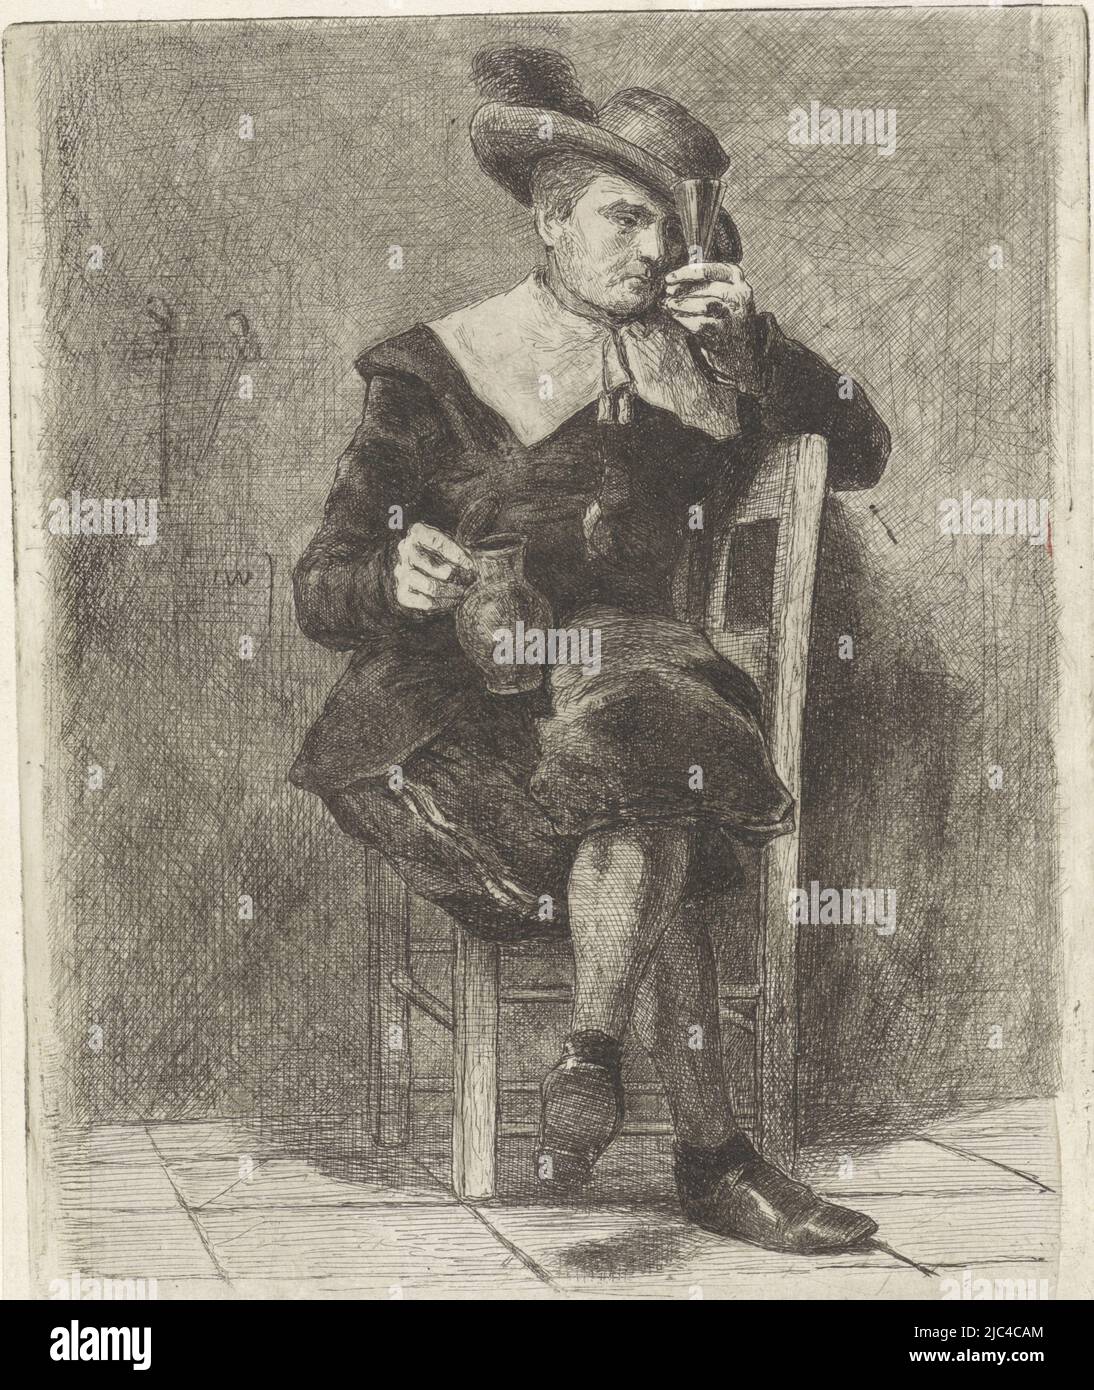 Sur une chaise se trouve un homme dans la robe du XVIIe siècle. Il porte un chapeau avec une plume sur sa tête. Dans ses mains, il tient une verseuse et un verre. Sur le mur derrière lui se trouvent quelques pipes., homme avec pichet et verre sur une chaise, imprimeur: Jan Weissenbruch, (mentionné sur l'objet), la Haye, (éventuellement), 1837 - 1880, papier, gravure, h 147 mm × l 121 mm Banque D'Images